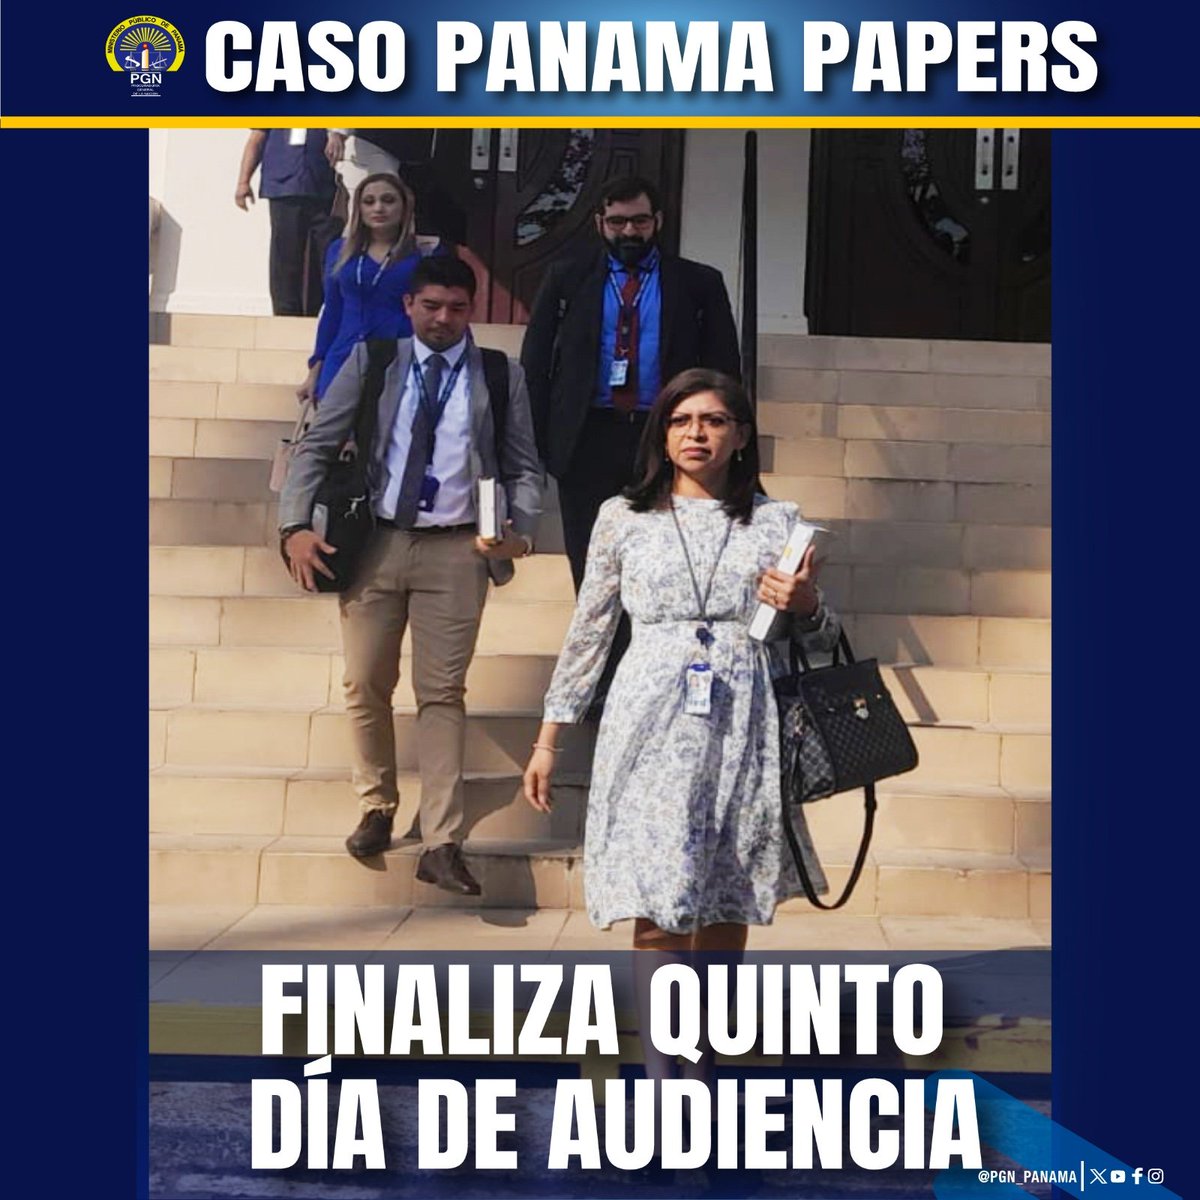 #Nacionales Este viernes 12 de abril finalizó el quinto día de audiencia ordinaria del caso #PanamaPapers. El próximo lunes se reanudará a las 9:00 am. con el interrogatorio a los peritos. @PGN_PANAMA #RadioPanama